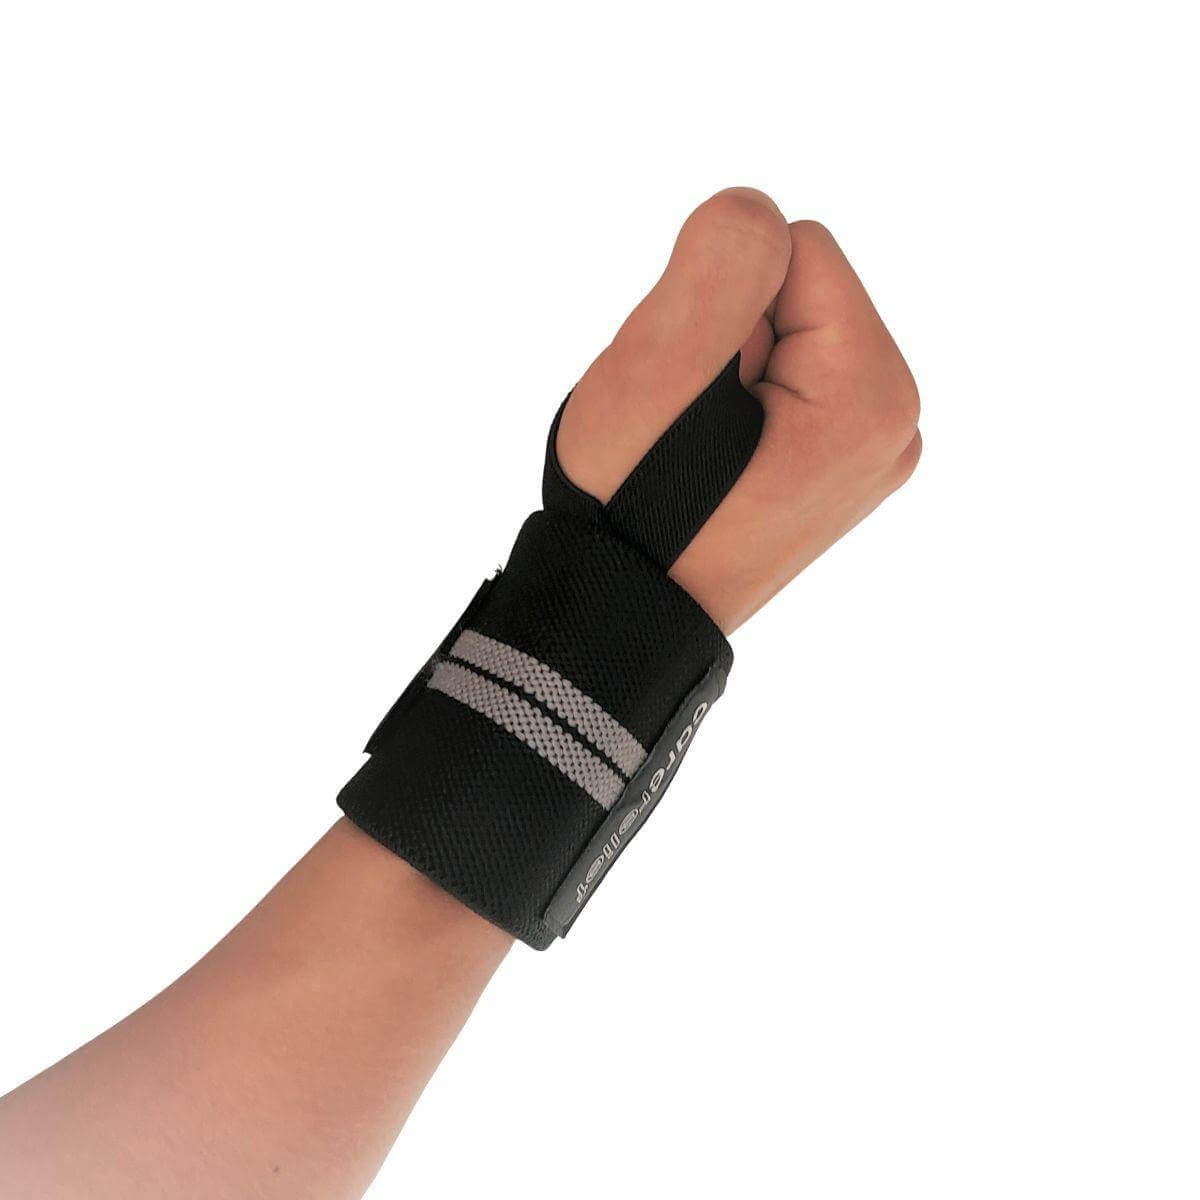 Wrist wraps sæt med støtte til håndleddene ved træning, 8 x 60 cm. Køb Carerelief håndledsbind HL30 med håndledsstøtte til styrketræning, vægtløftning, crossfit og fitness her!